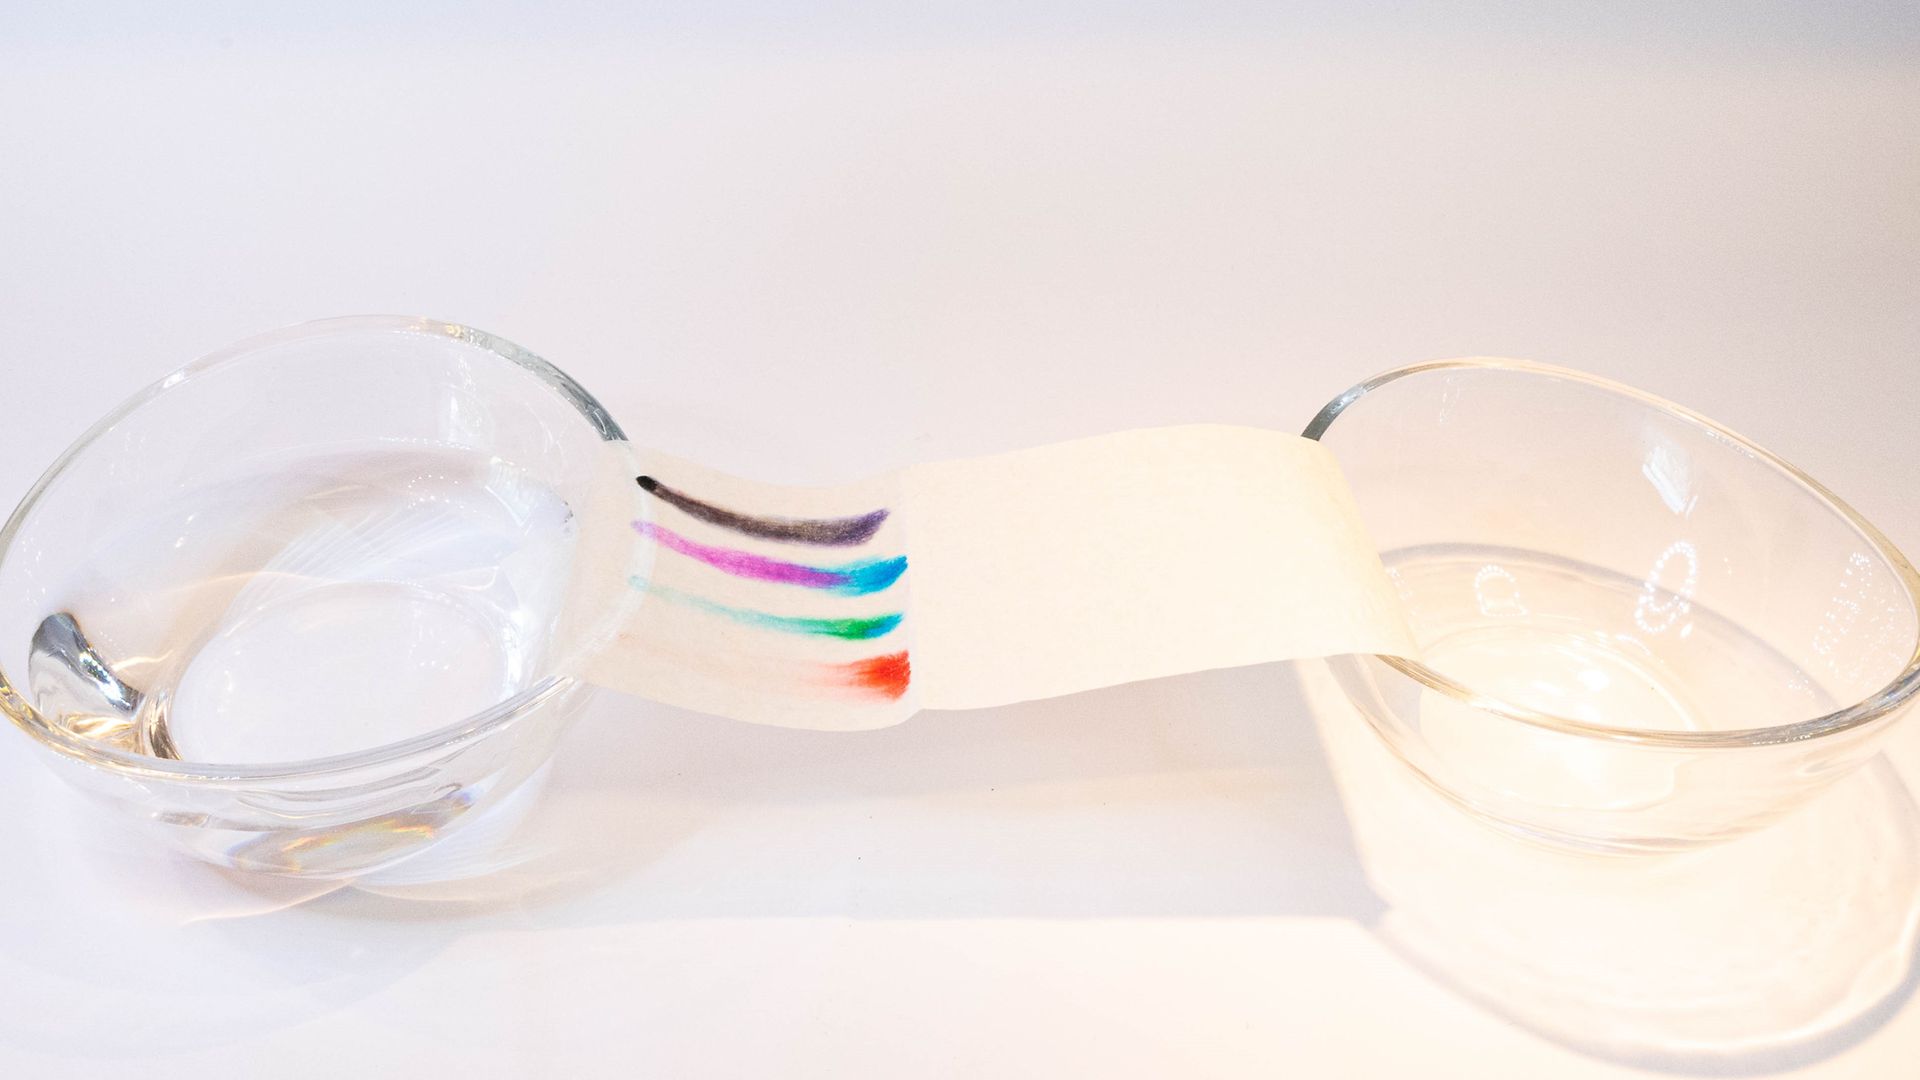 listra de papel mostrando traços coloridos em duas tigelas de vidro